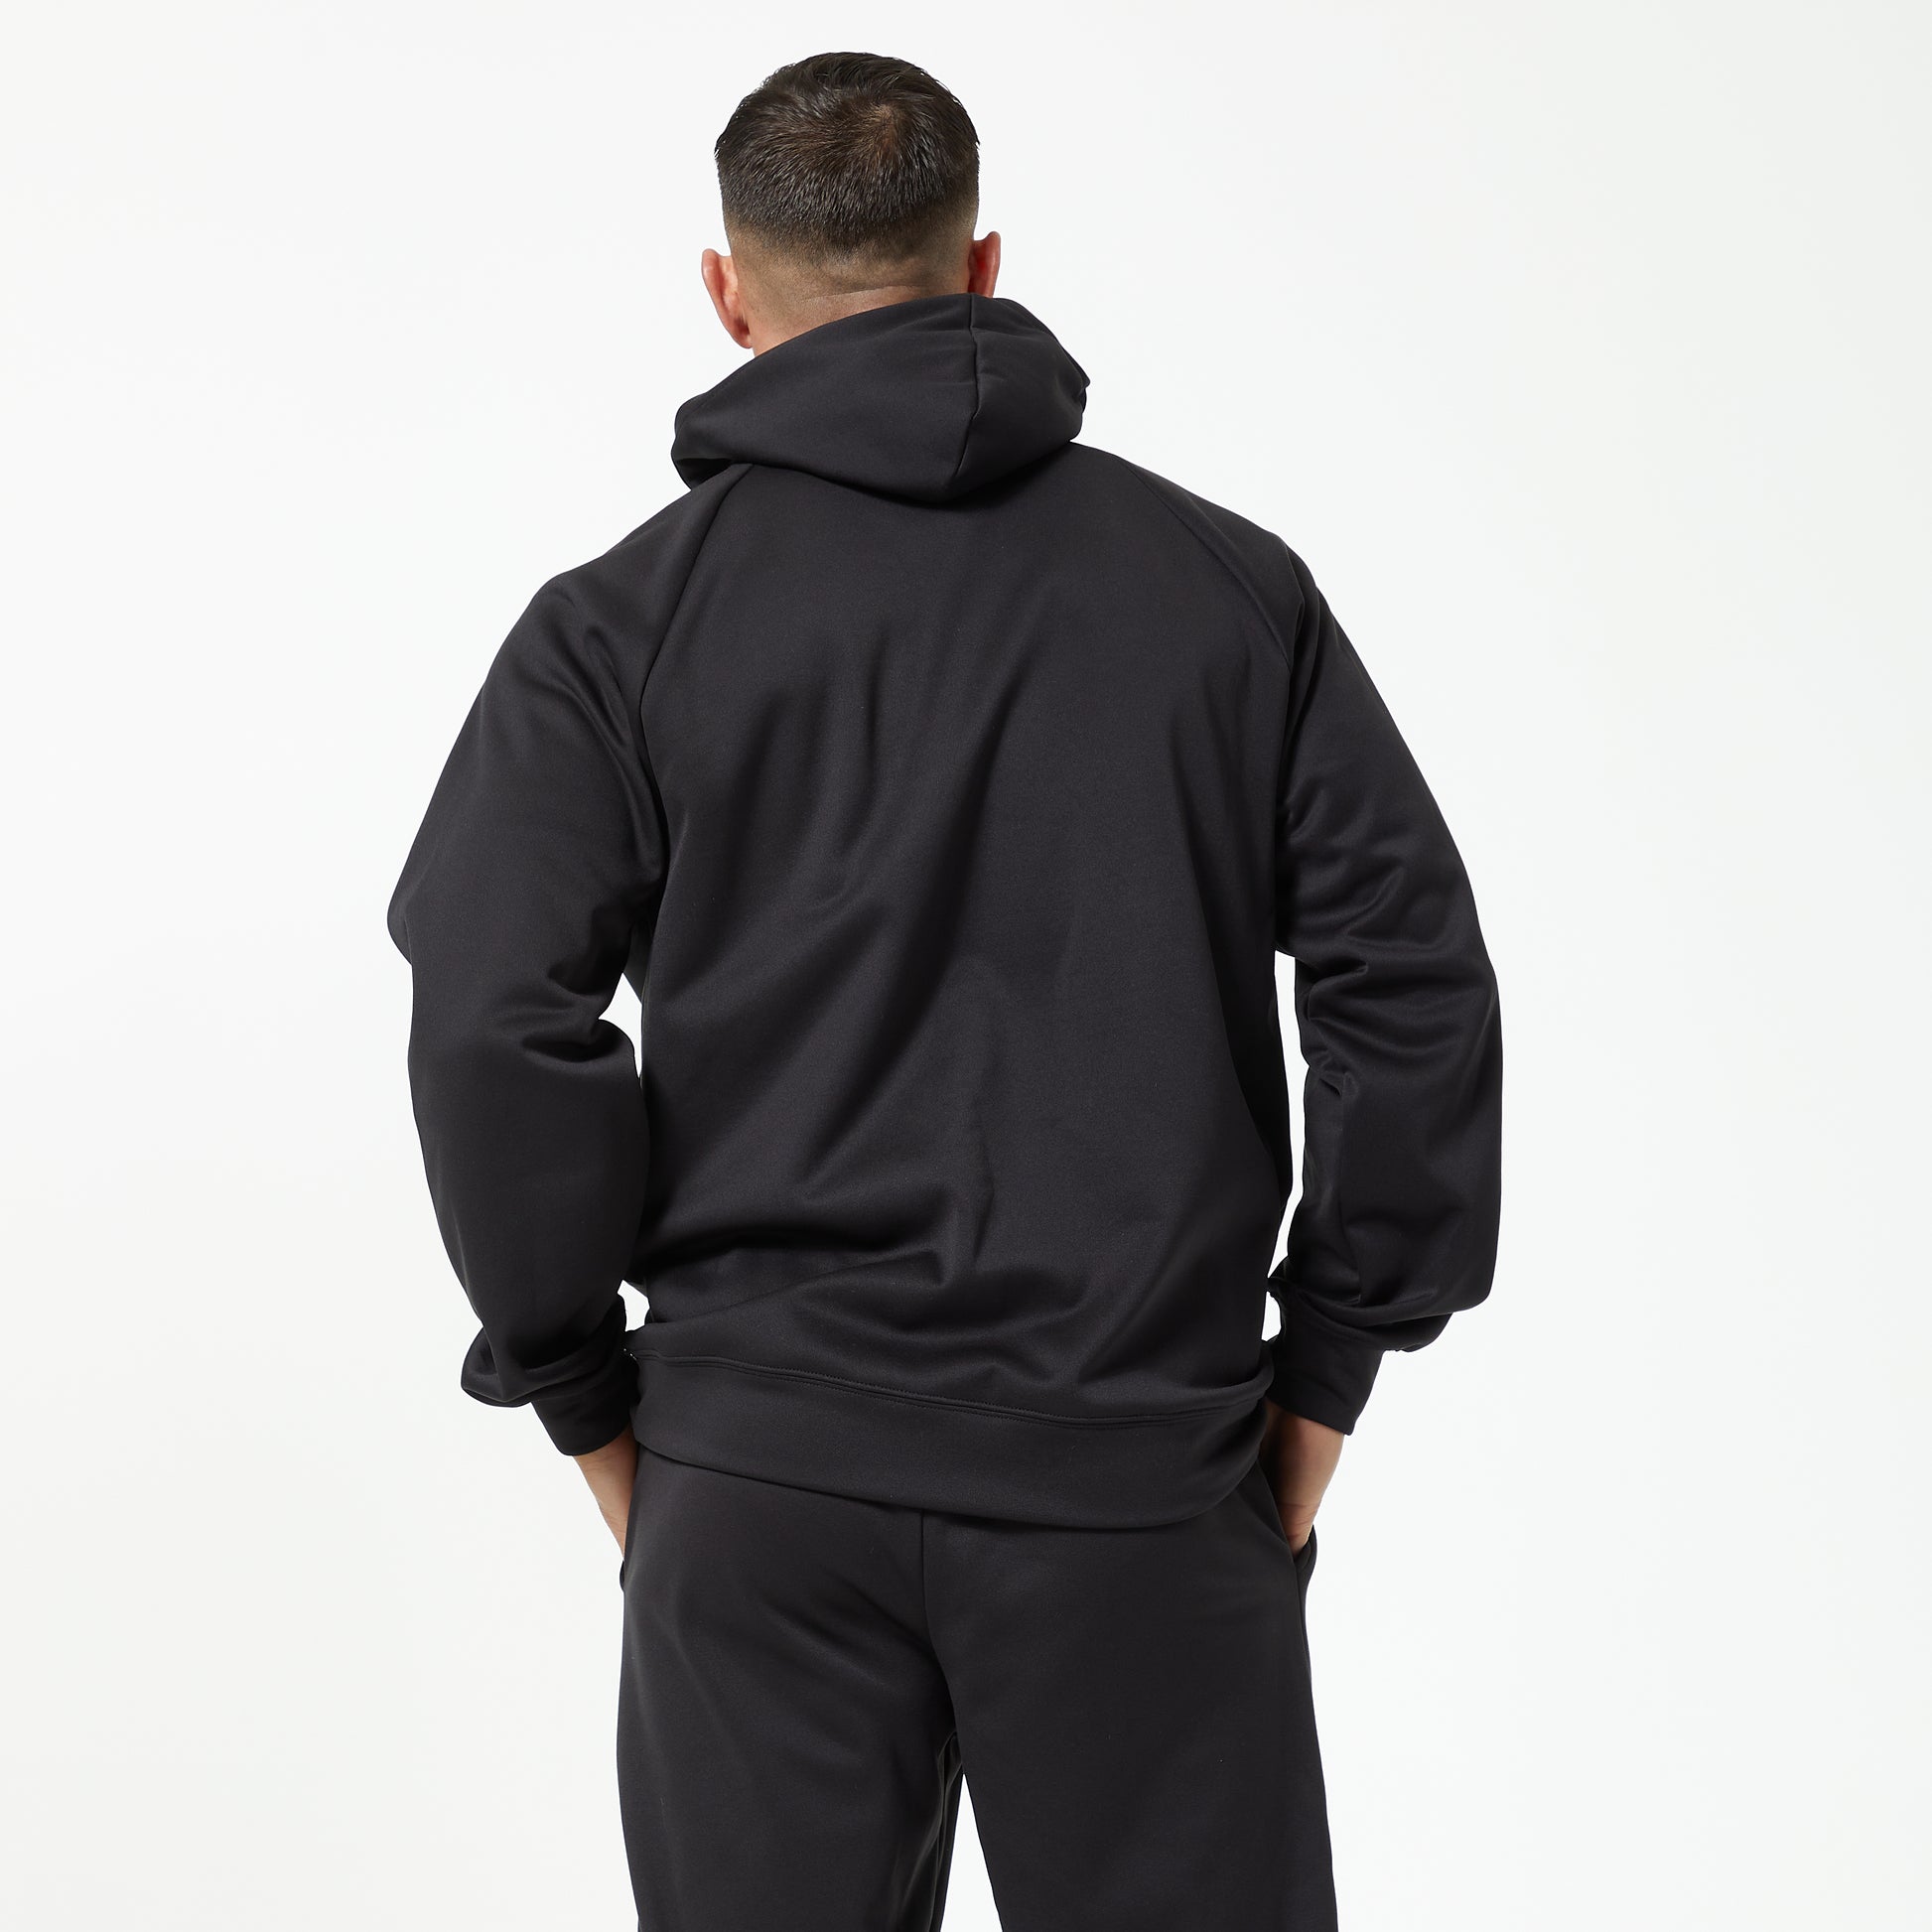 N ew w/Tag Men's Tek Gear Performance Fleece Mix Full ZIP Hoodie Below $50  Retail